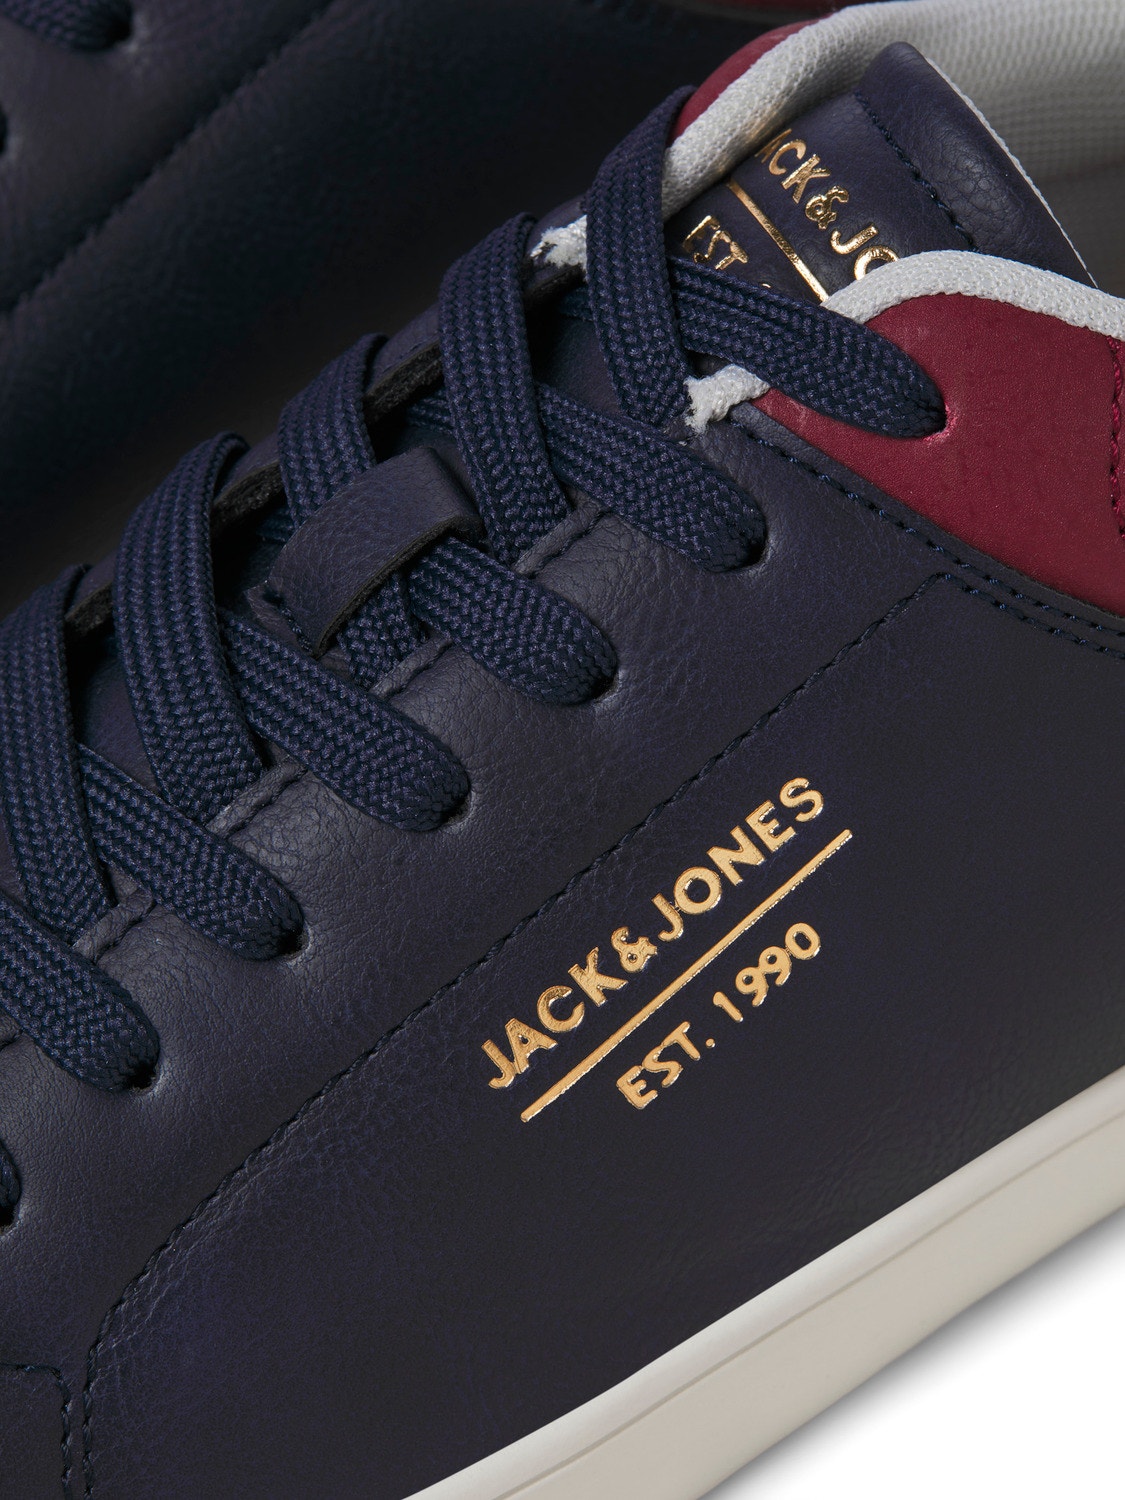 Jack & Jones Rubber Sneaker -Navy Blazer - 12229020